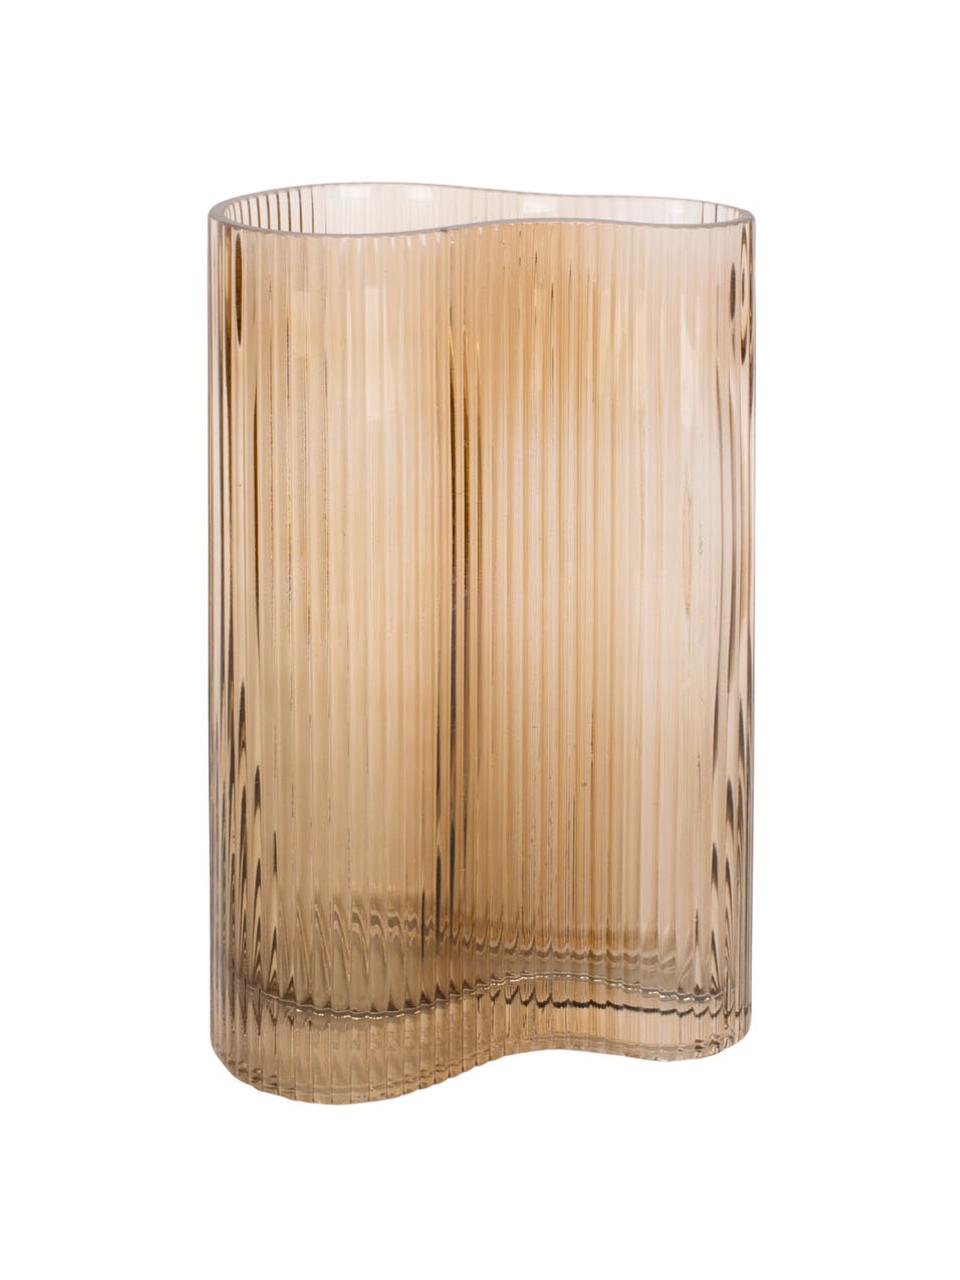 Glas-Vase Allure Wave in Hellbraun, Glas, getönt, Hellbraun, 10 x 27 cm